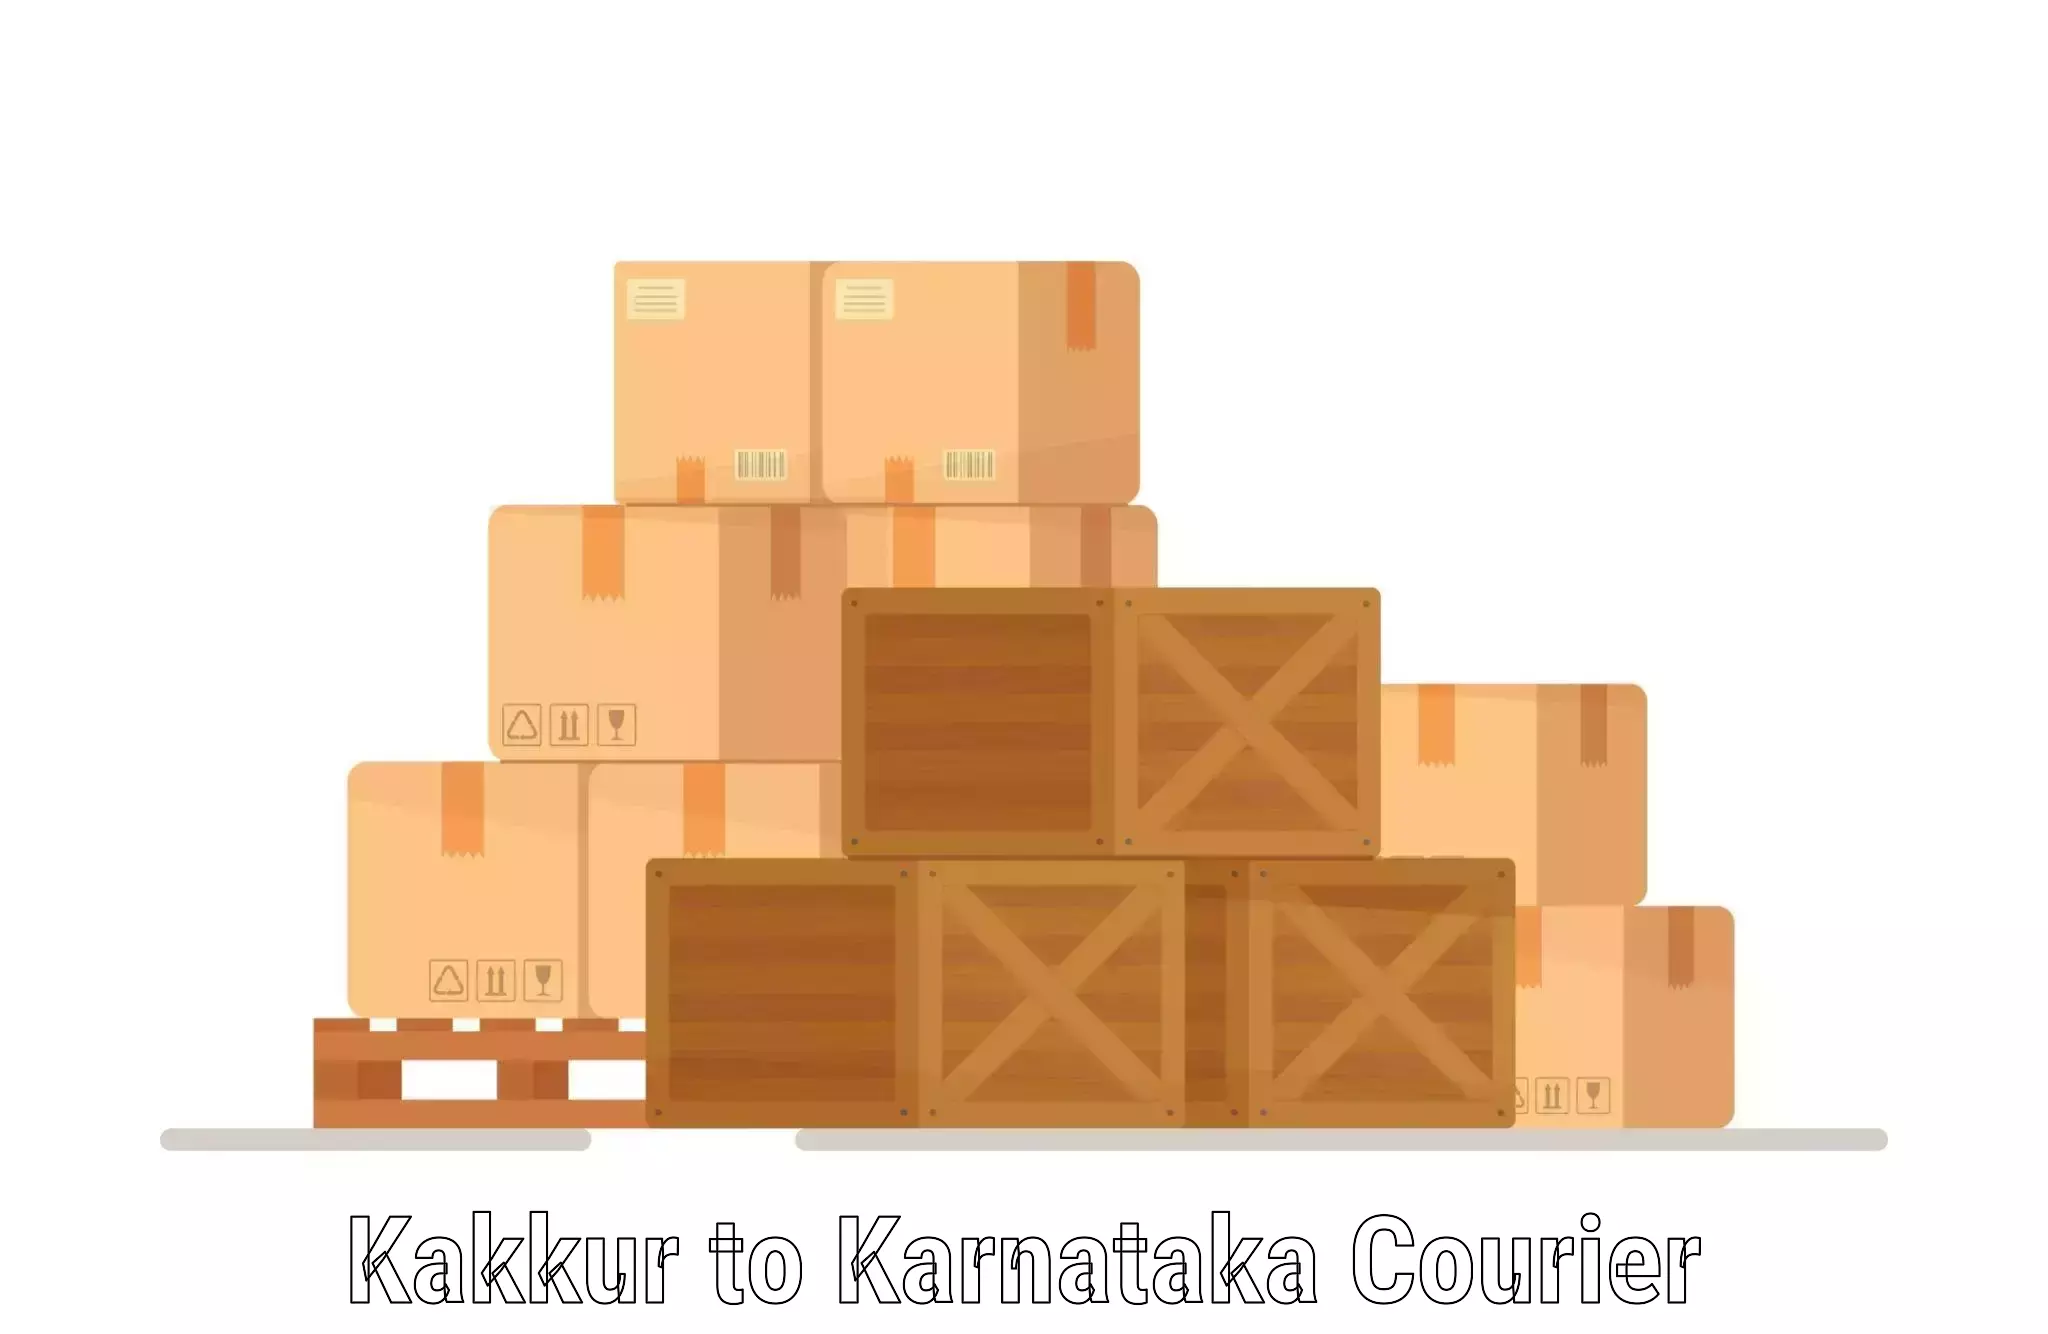 Bulk shipment in Kakkur to Karnataka